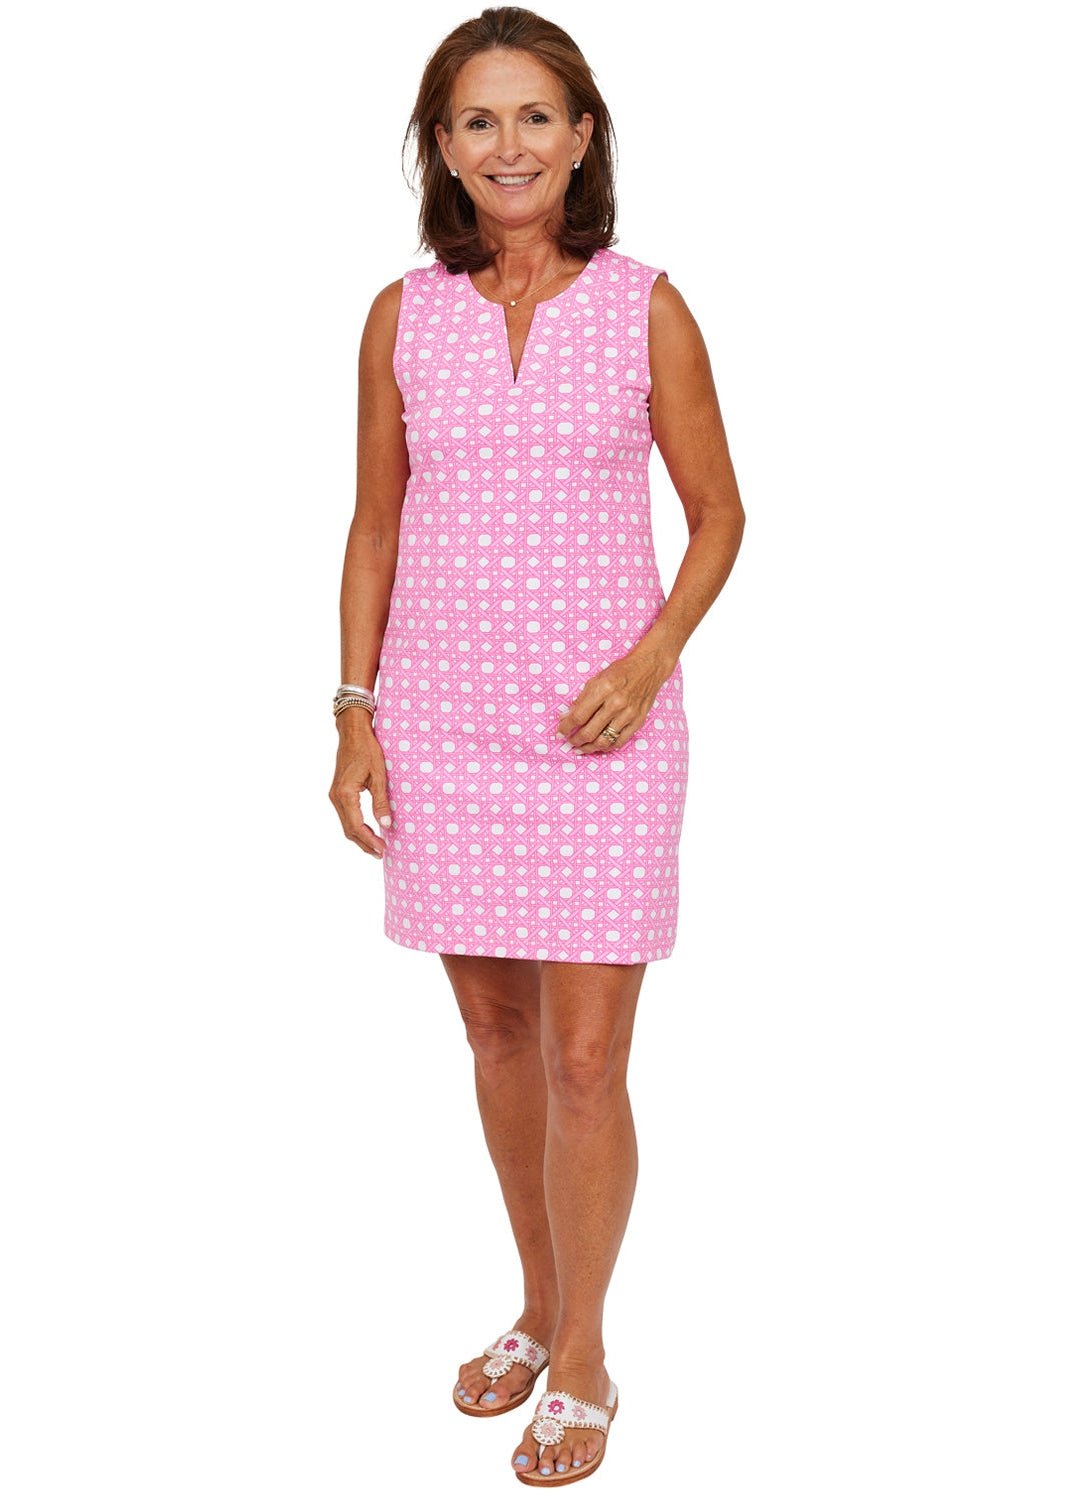 Lucille Dress - Boca Grande Cane Pink